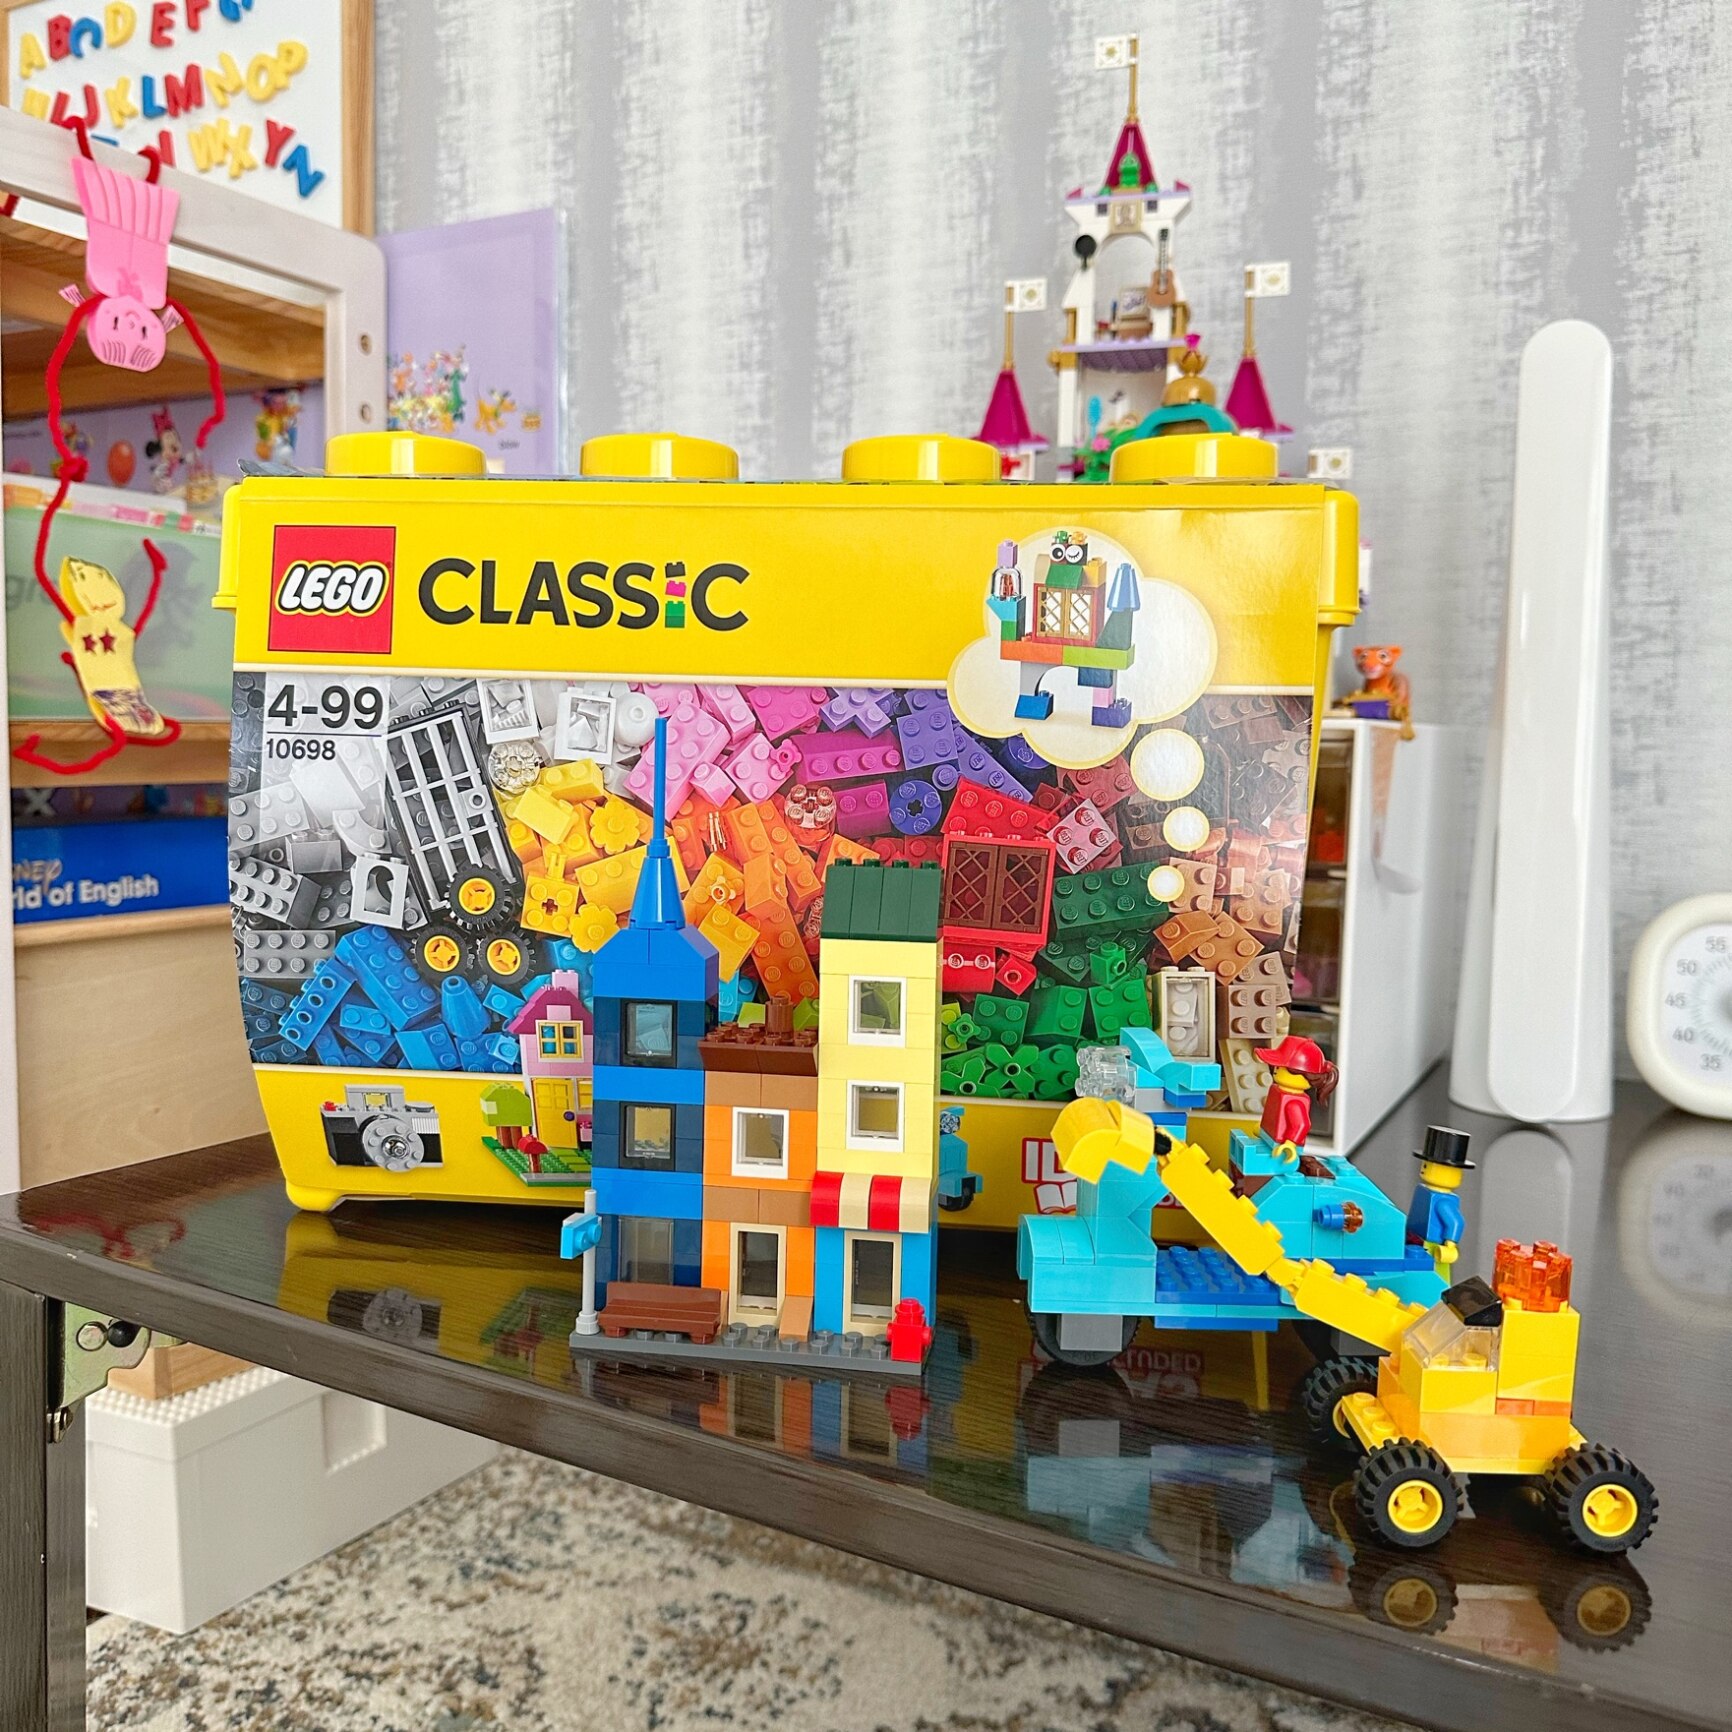 オンライン限定価格】レゴ LEGO クラシック 10698 黄色のアイデア